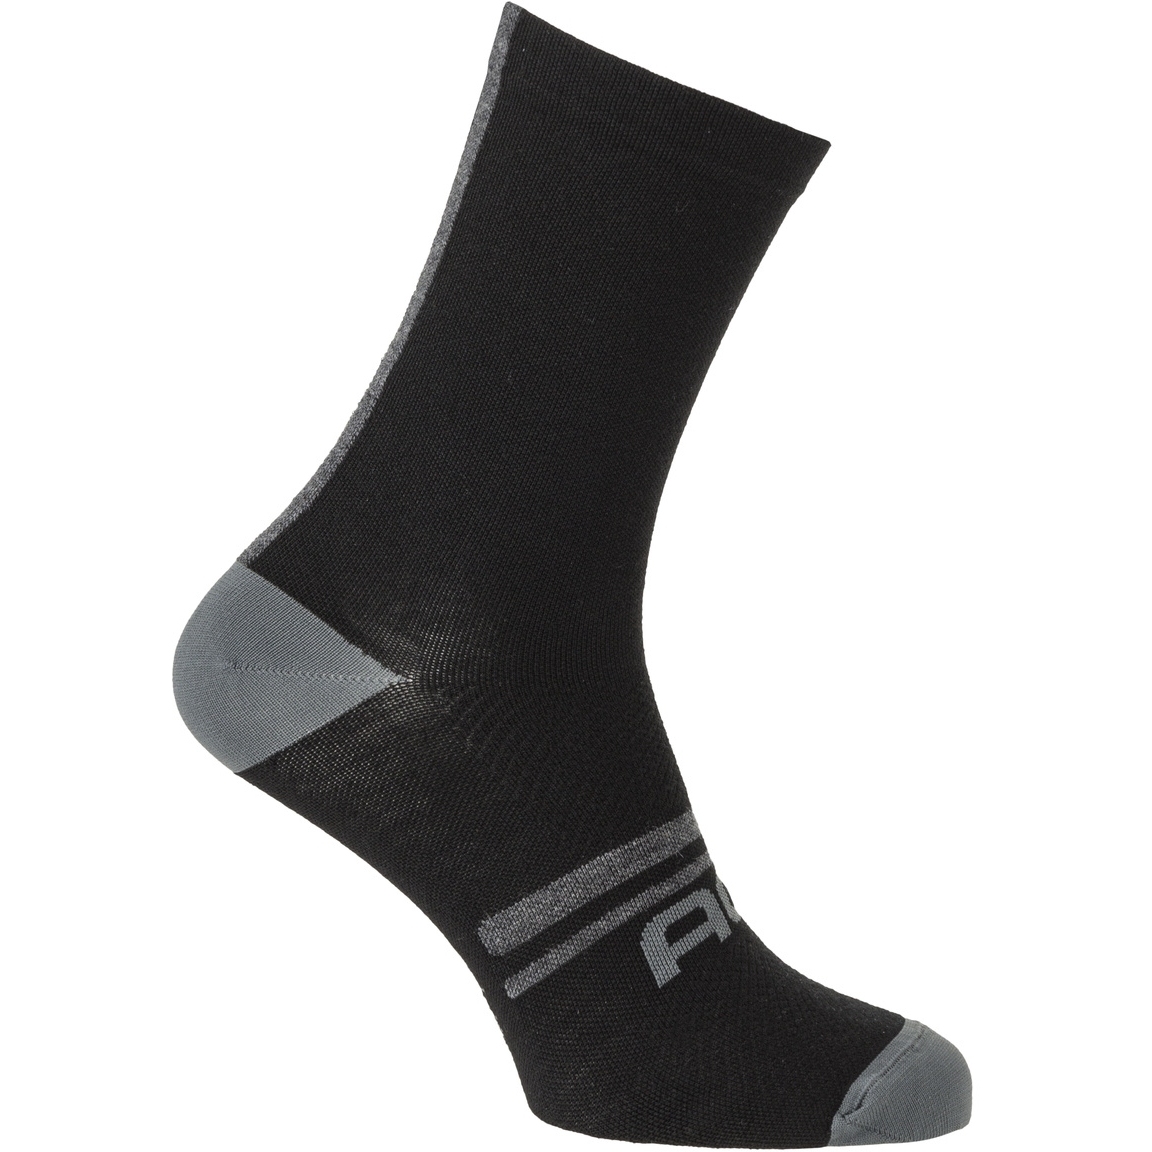 Produktbild von AGU Essential Winter Merino Socken - schwarz